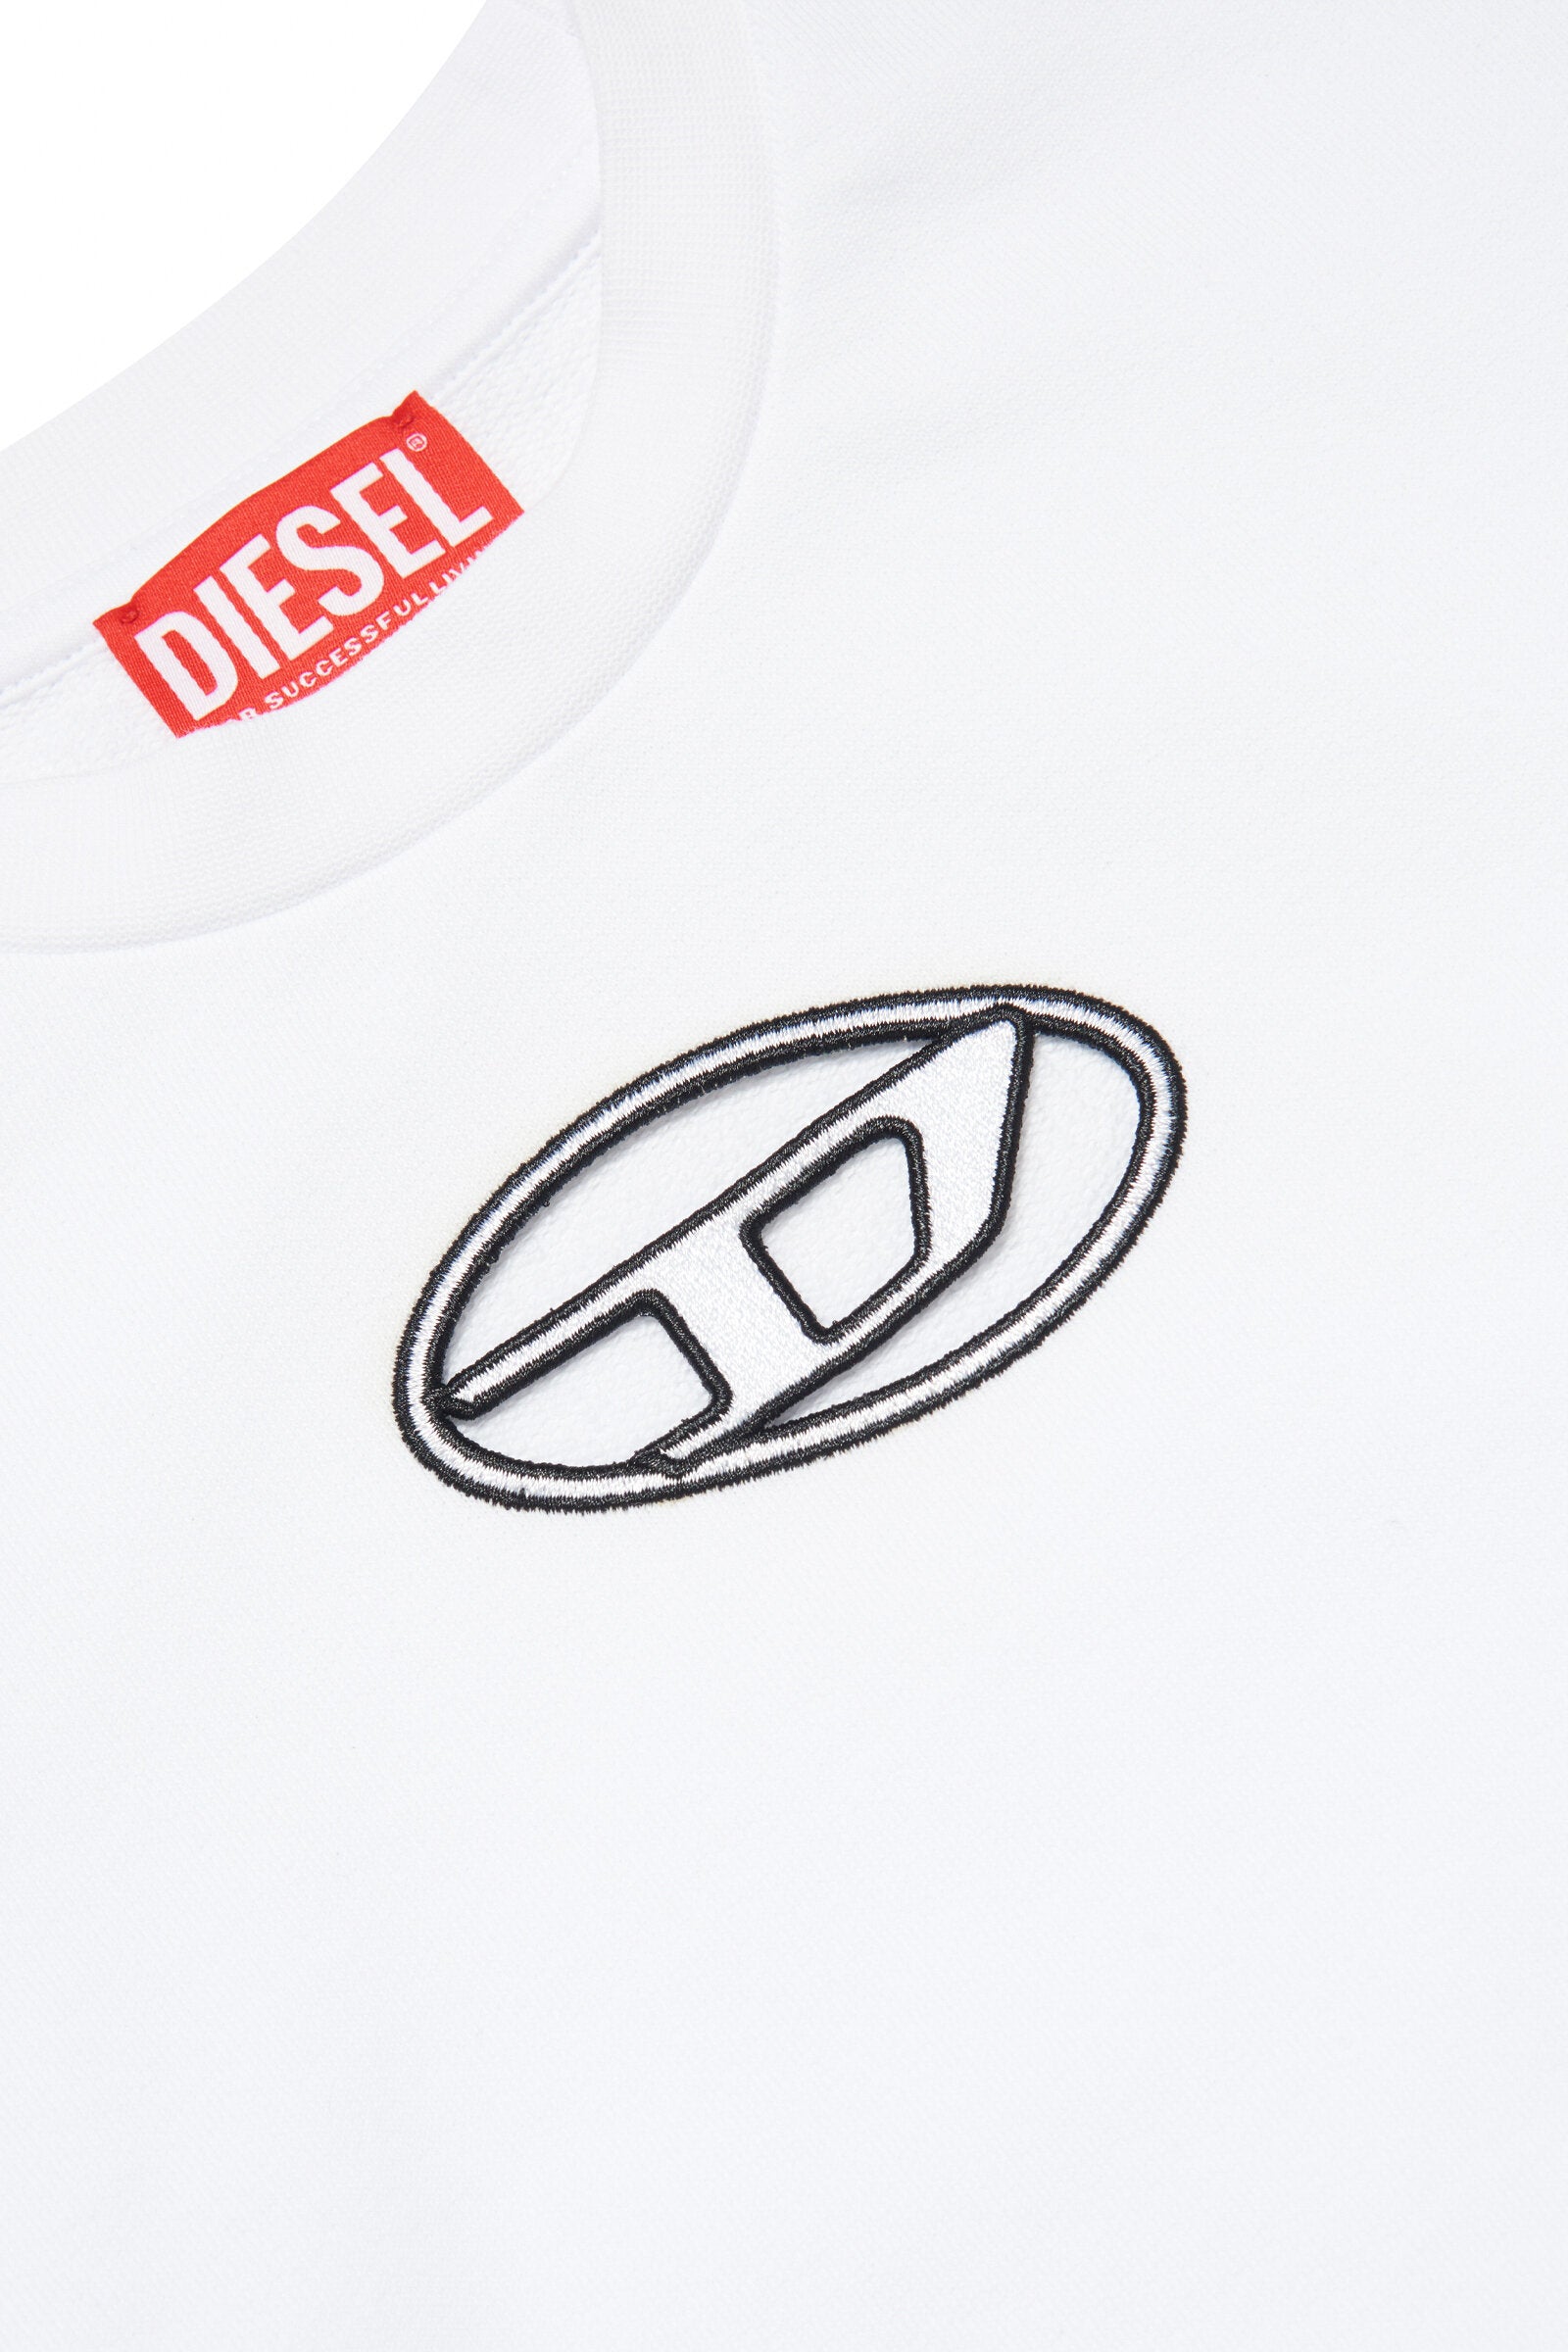 Diesel 楕円形Dロゴ付きの白い綿のクルーネックスウェットシャツ